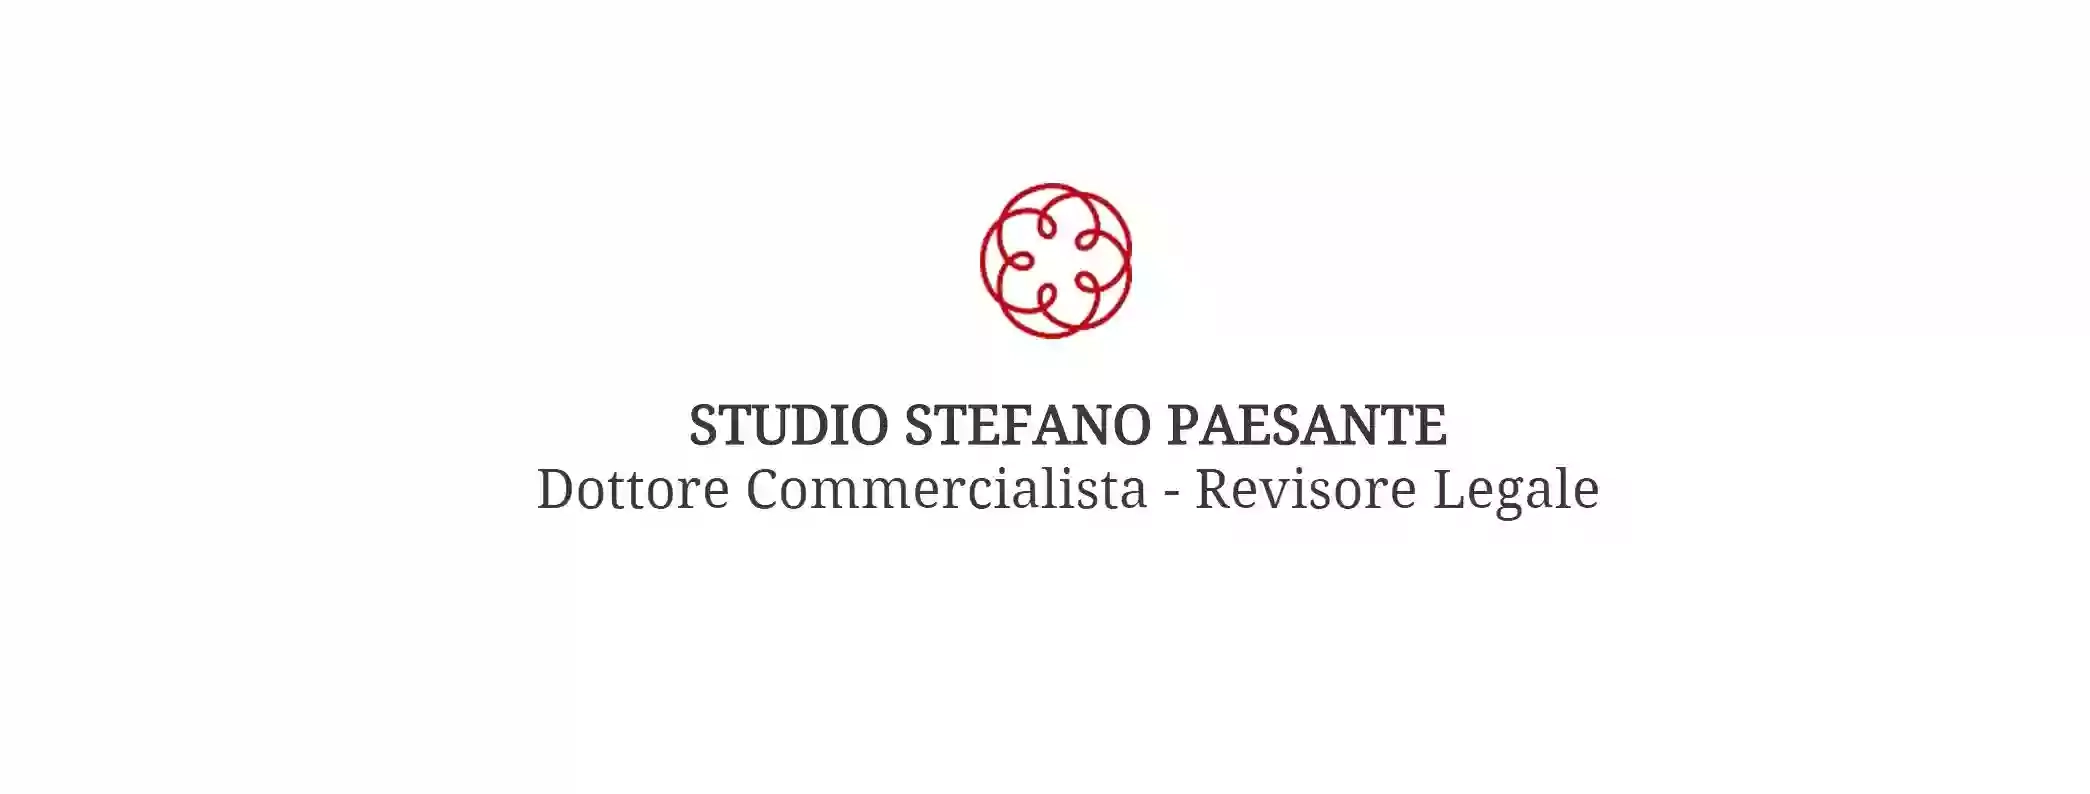 Commercialista Paesante Stefano - Studio Dott. Commercialista e Revisore Legale